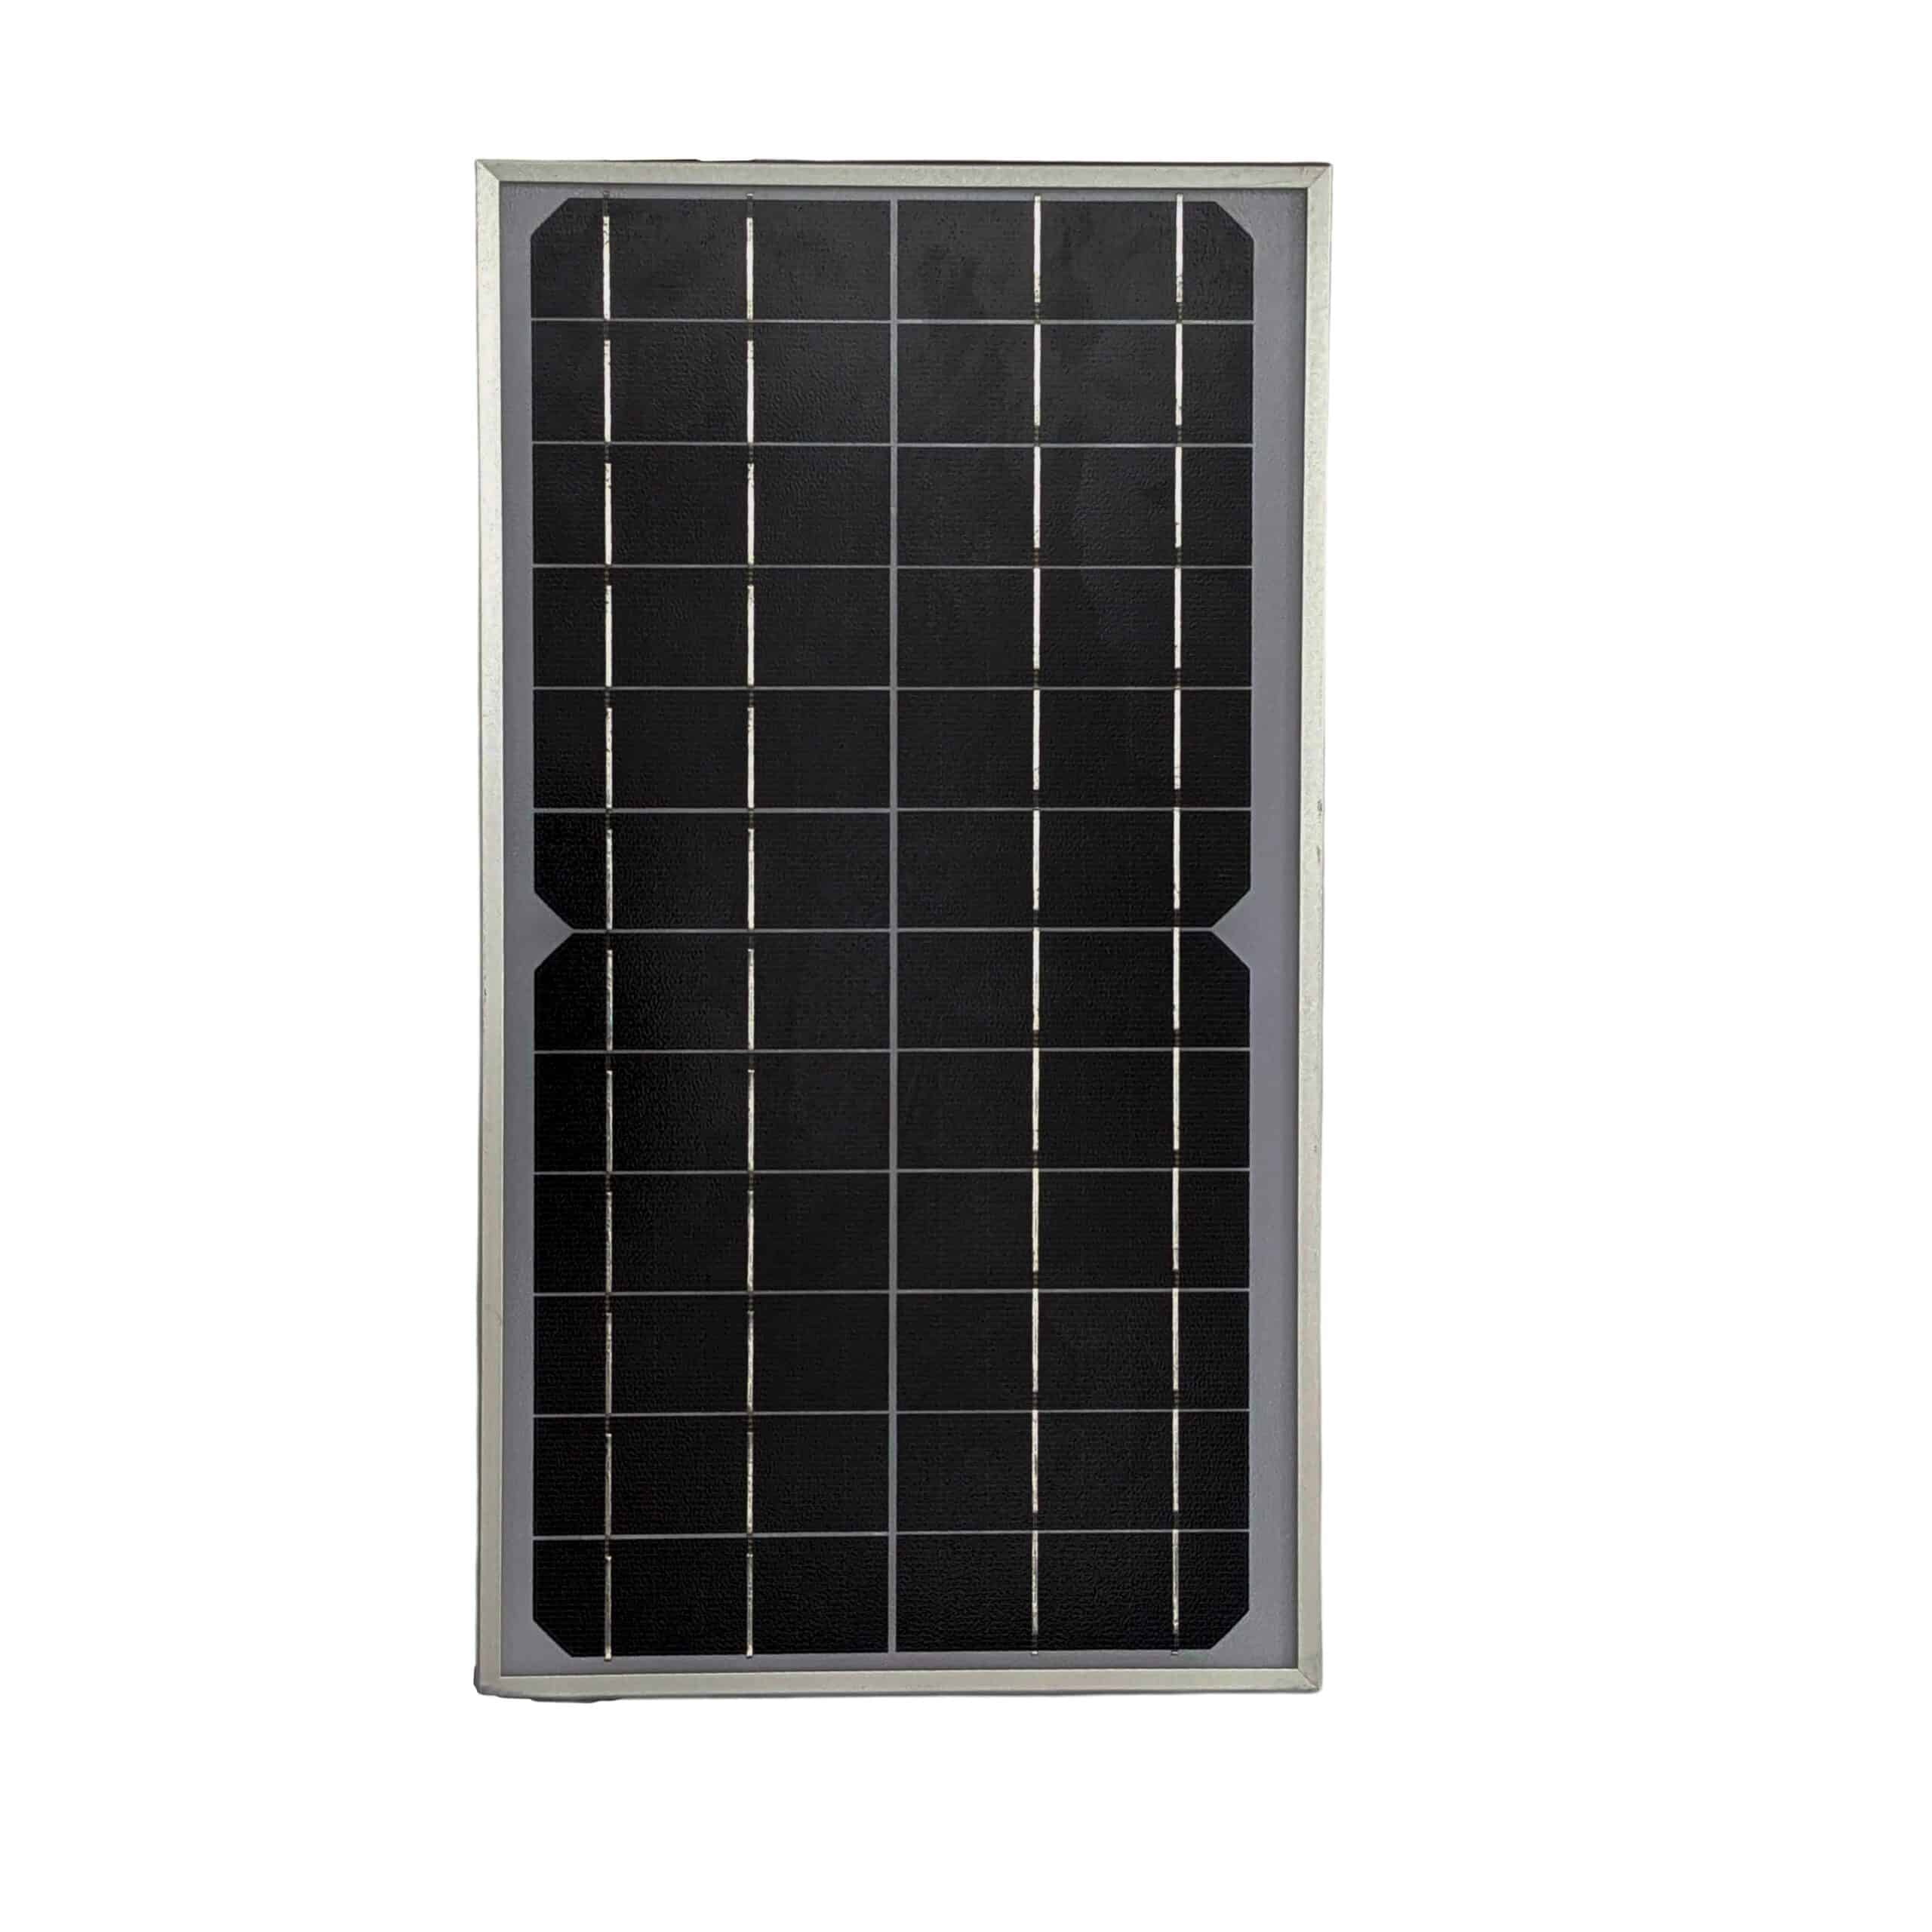 12V 10-Watt Solar Panels